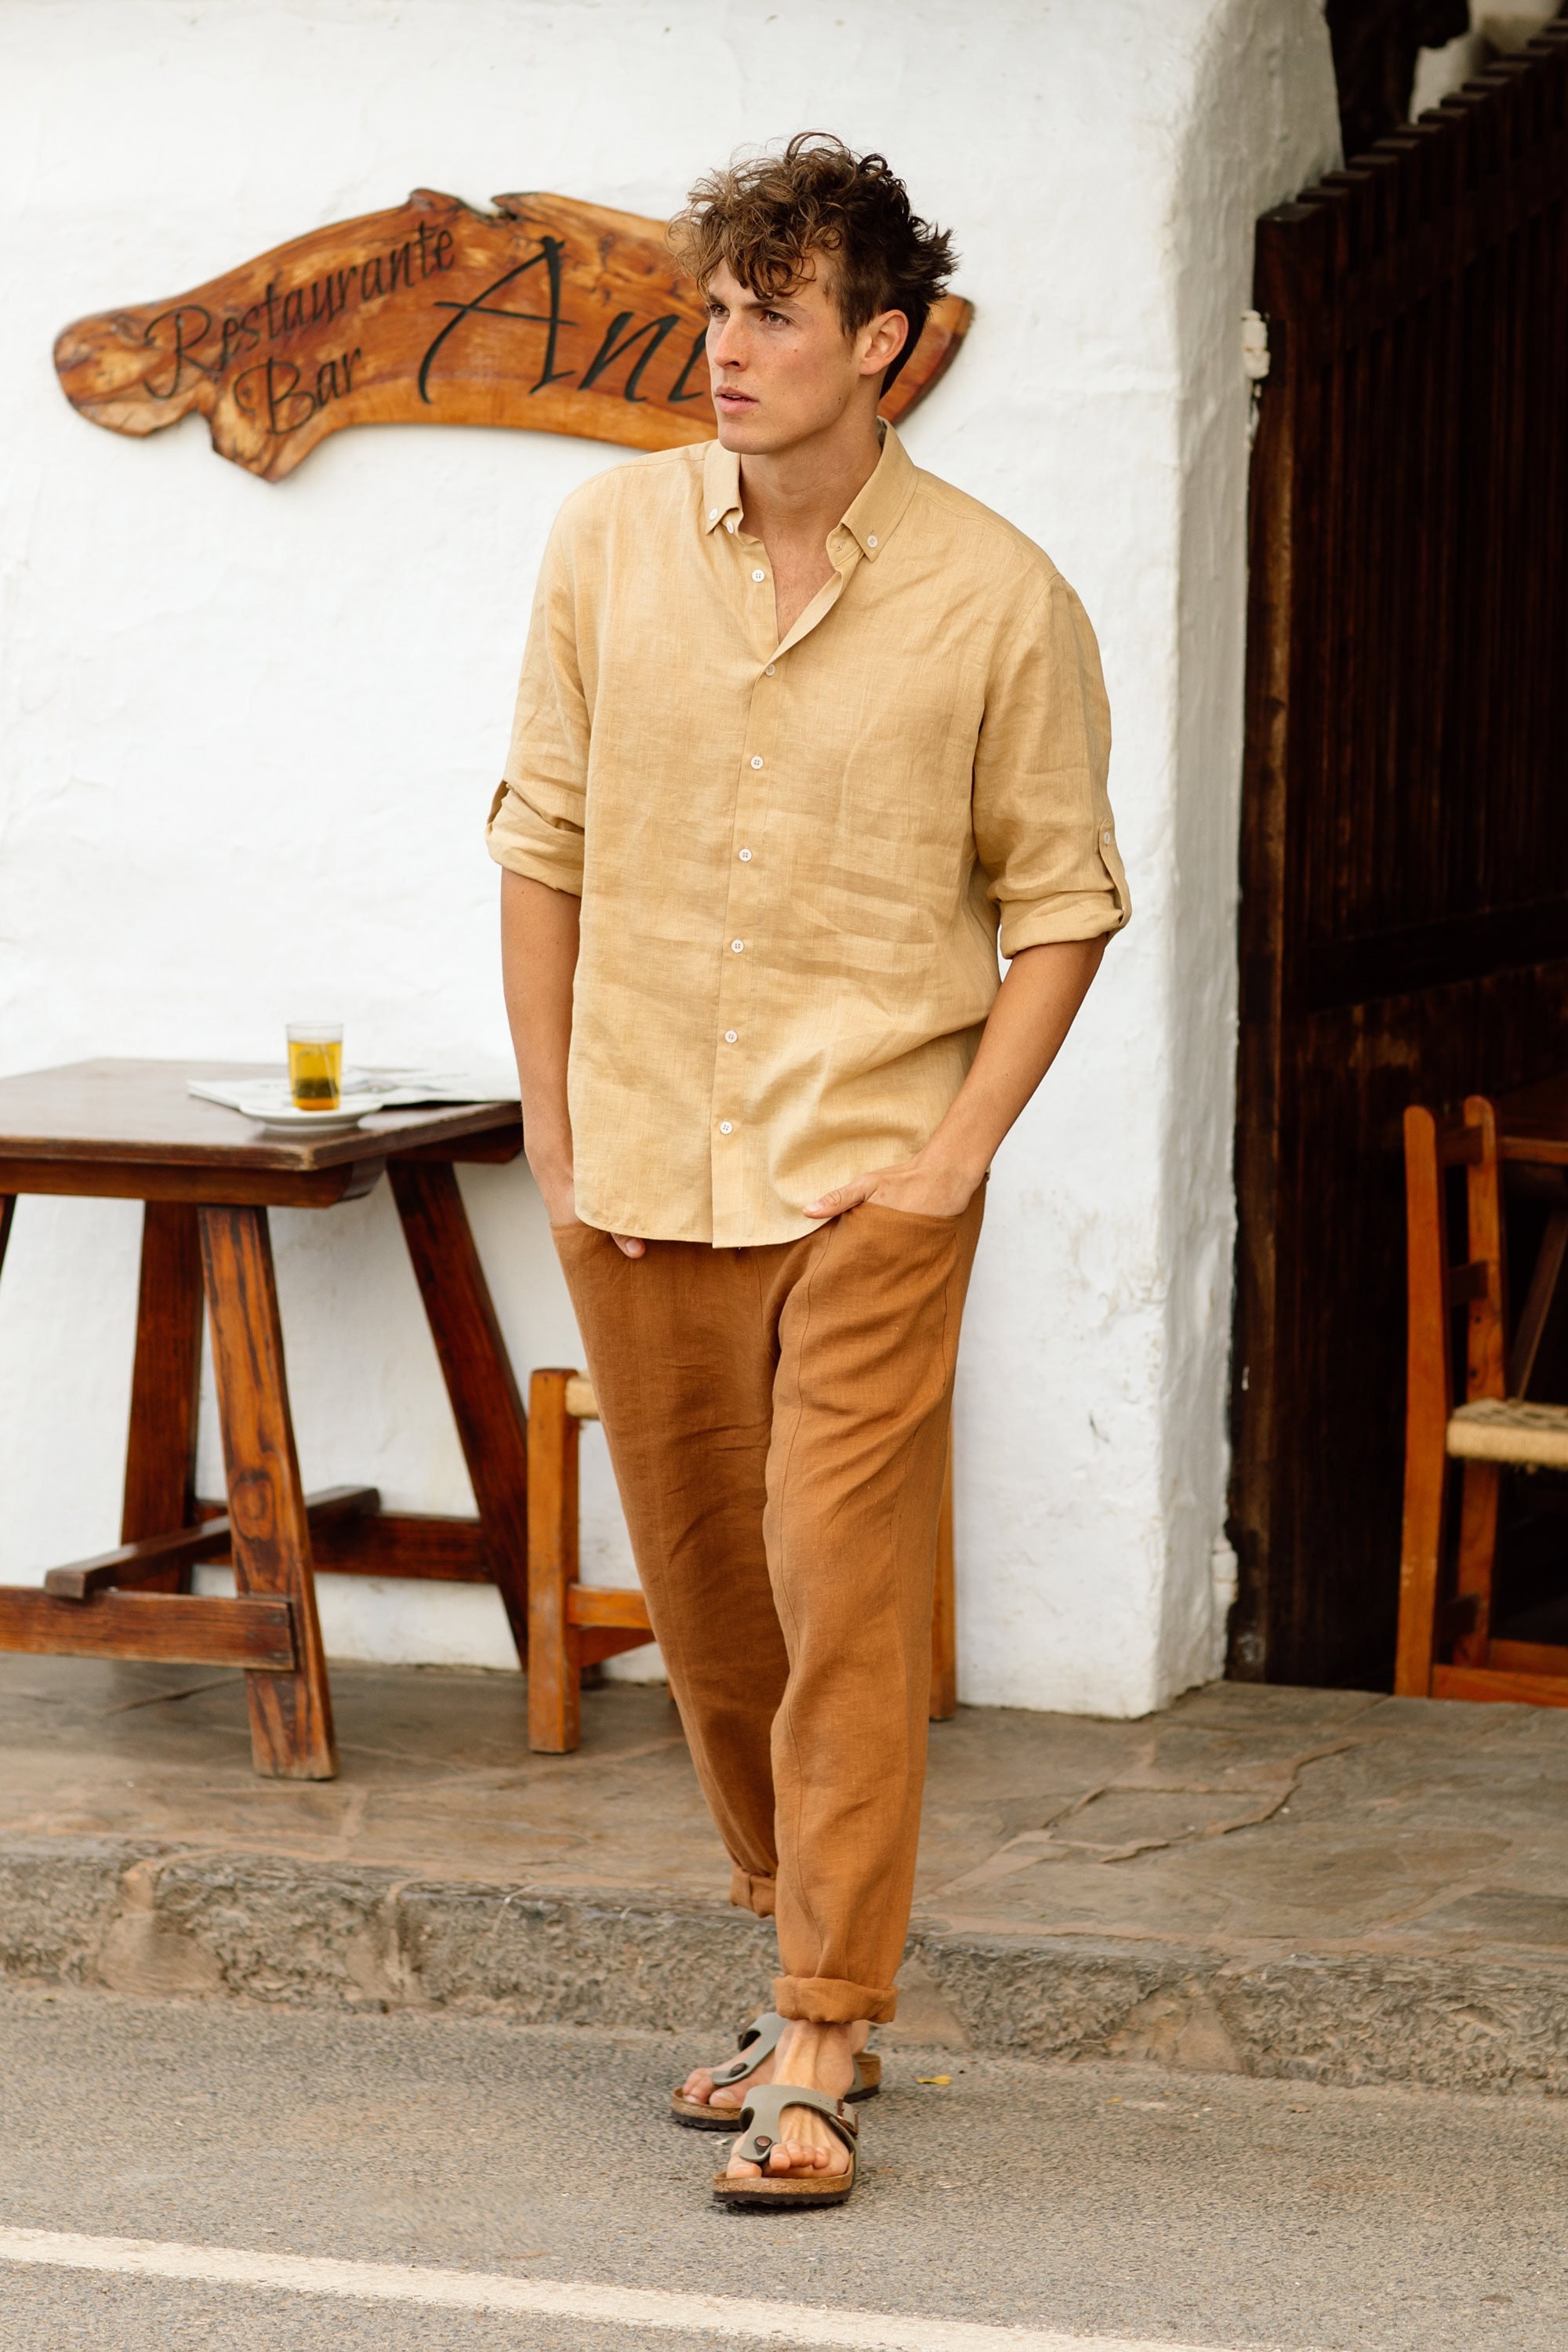 Men's Linen Shirt CORONADO in Sandy Beige / Long Sleeve Shirt / Men's Linen  Summer Shirt 